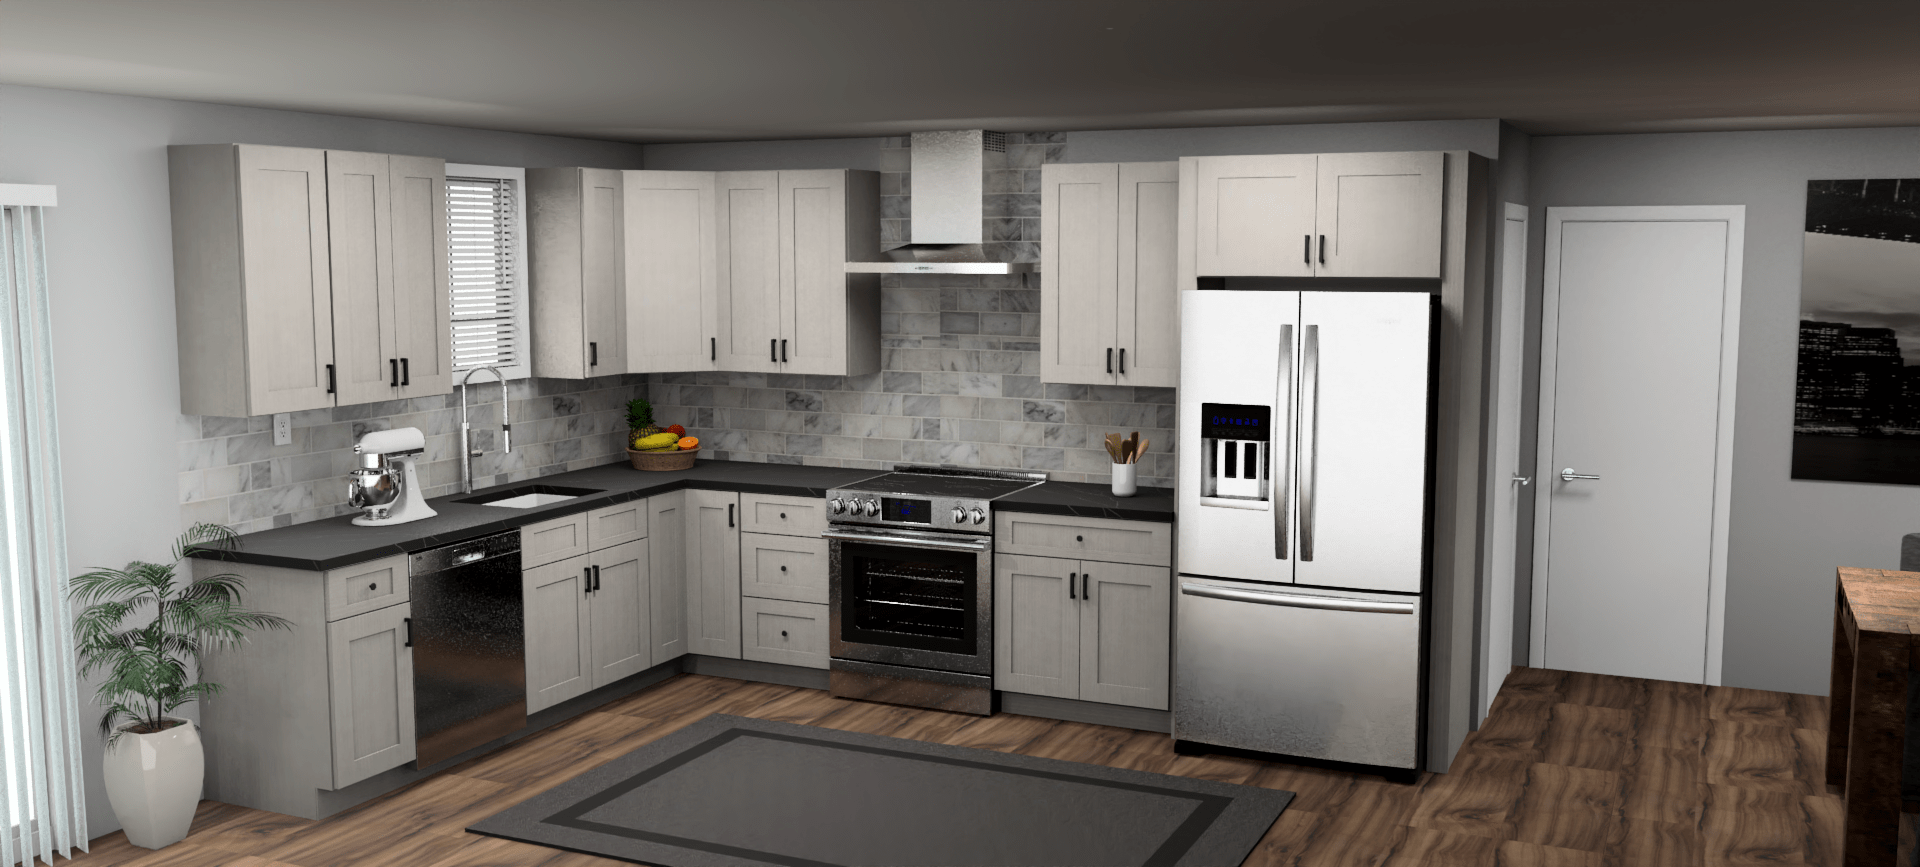 Fabuwood Allure Galaxy Horizon 9 x 13 L Shaped Kitchen Main Layout Photo